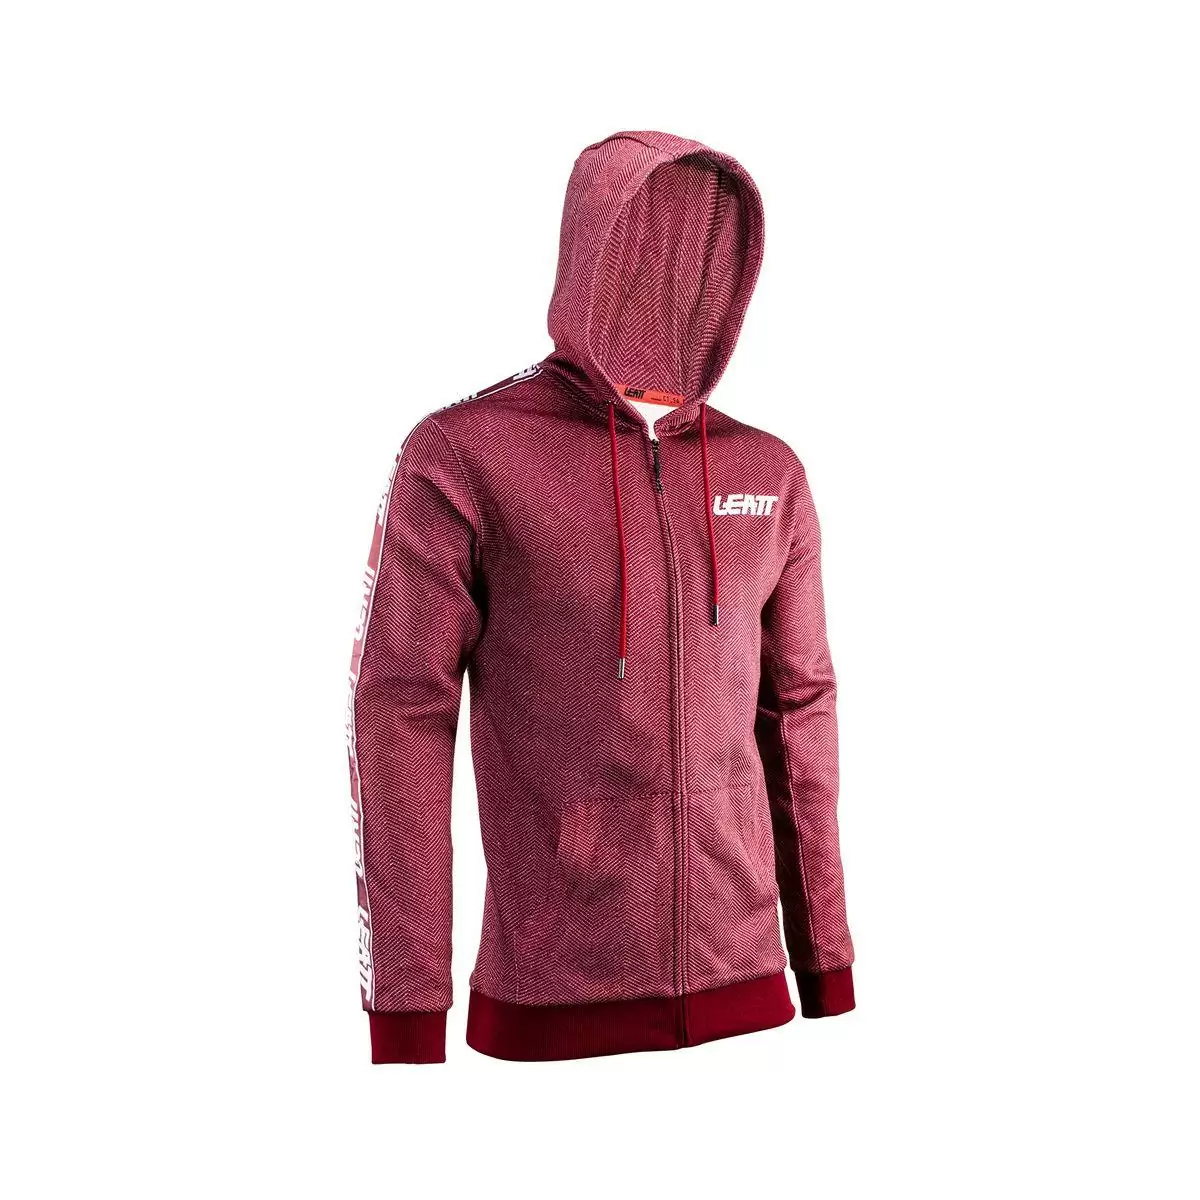 Red Premium Zip Hoodie Sweatshirt Size XXXL - image